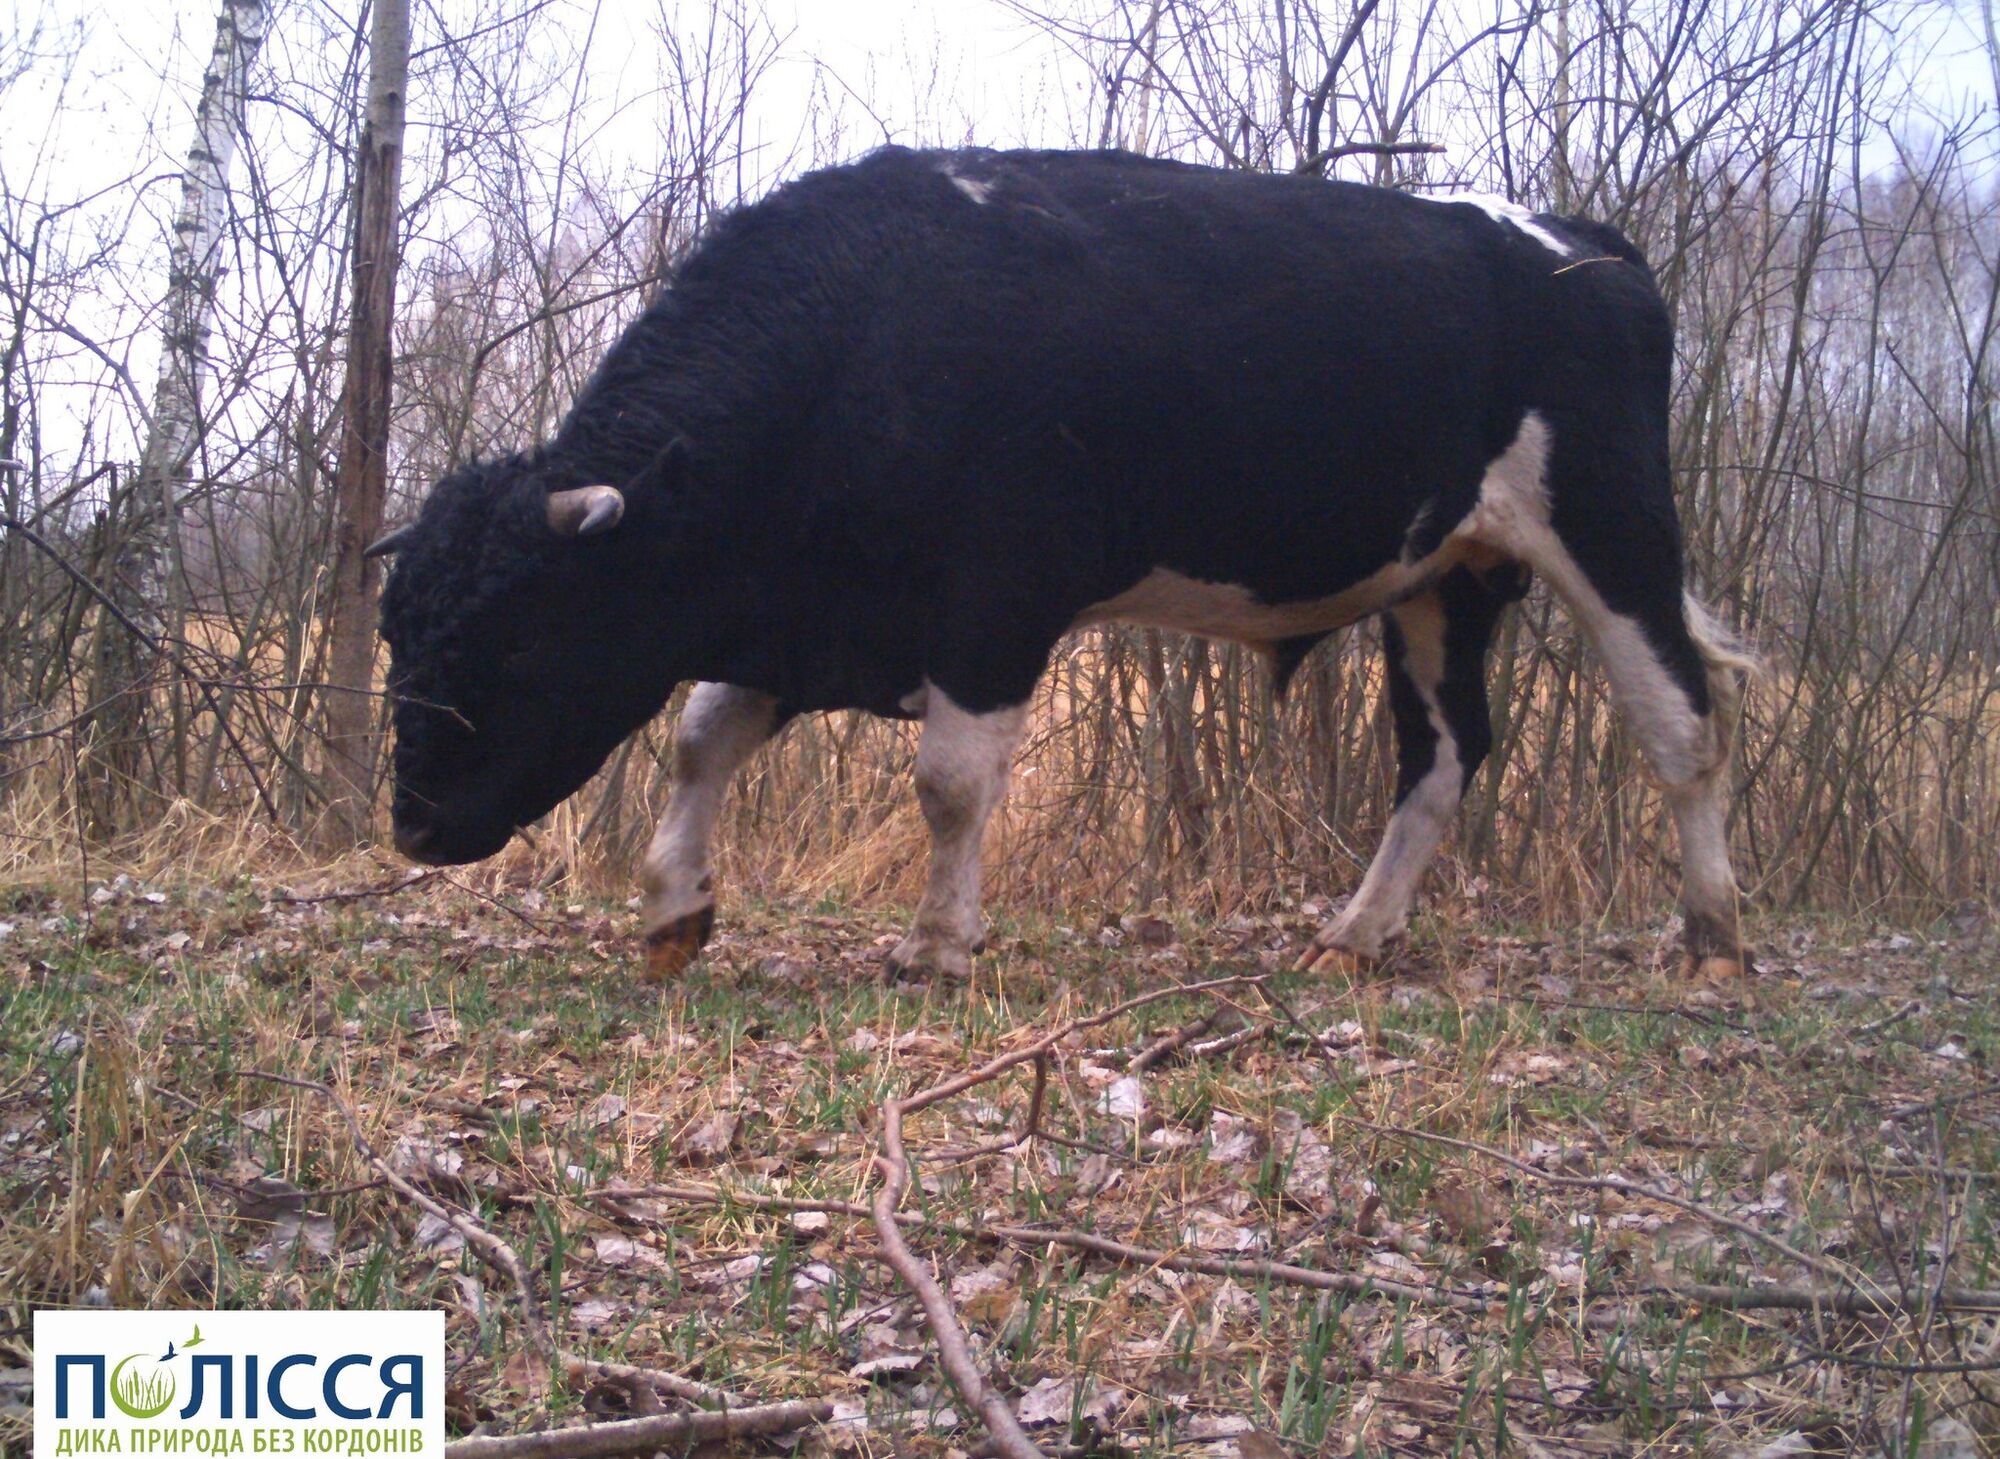 На территории Чернобыльской зоны живет уникальное стадо одичавших домашних коров: животных зафиксировали фотоловушки